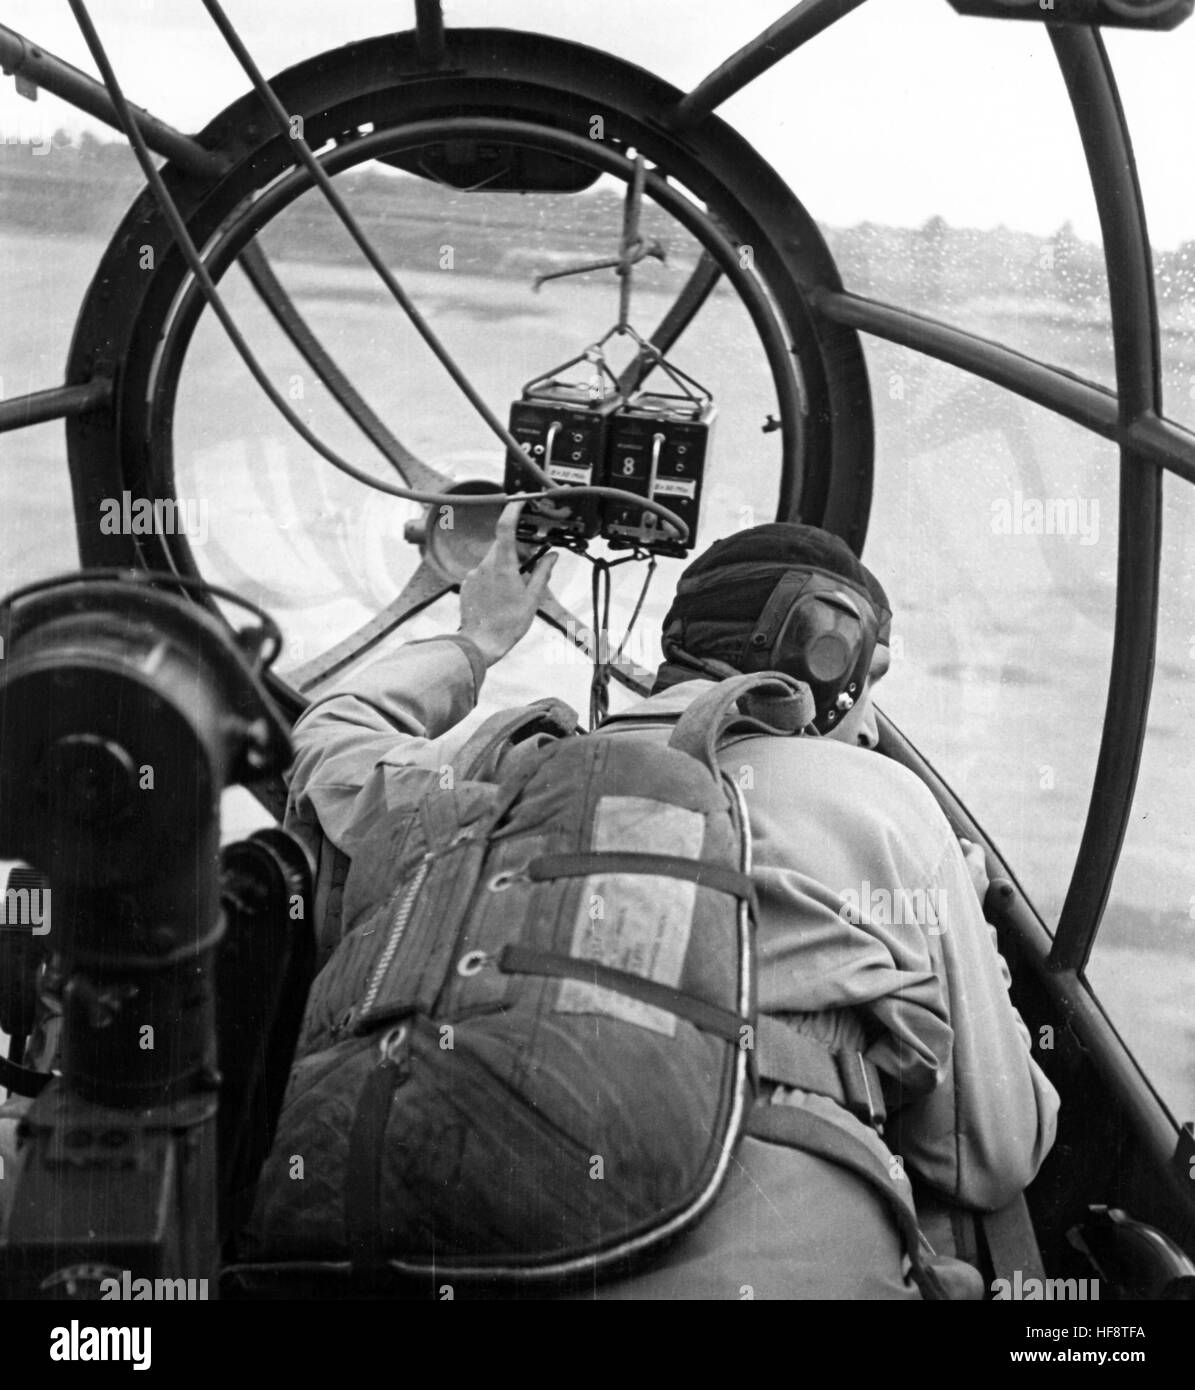 Das Nazi-Bild zeigt einen Testpiloten mit Maske und Fallschirm an einem Tacograph im Cockpit eines deutschen Luftwaffe Heinkel He 111 Kampfflugzeugs während eines Testflugs. Veröffentlichungsdatum unbekannt. Fotoarchiv für Zeitgeschichtee - KEIN WIRELESS-SERVICE - | weltweite Nutzung Stockfoto